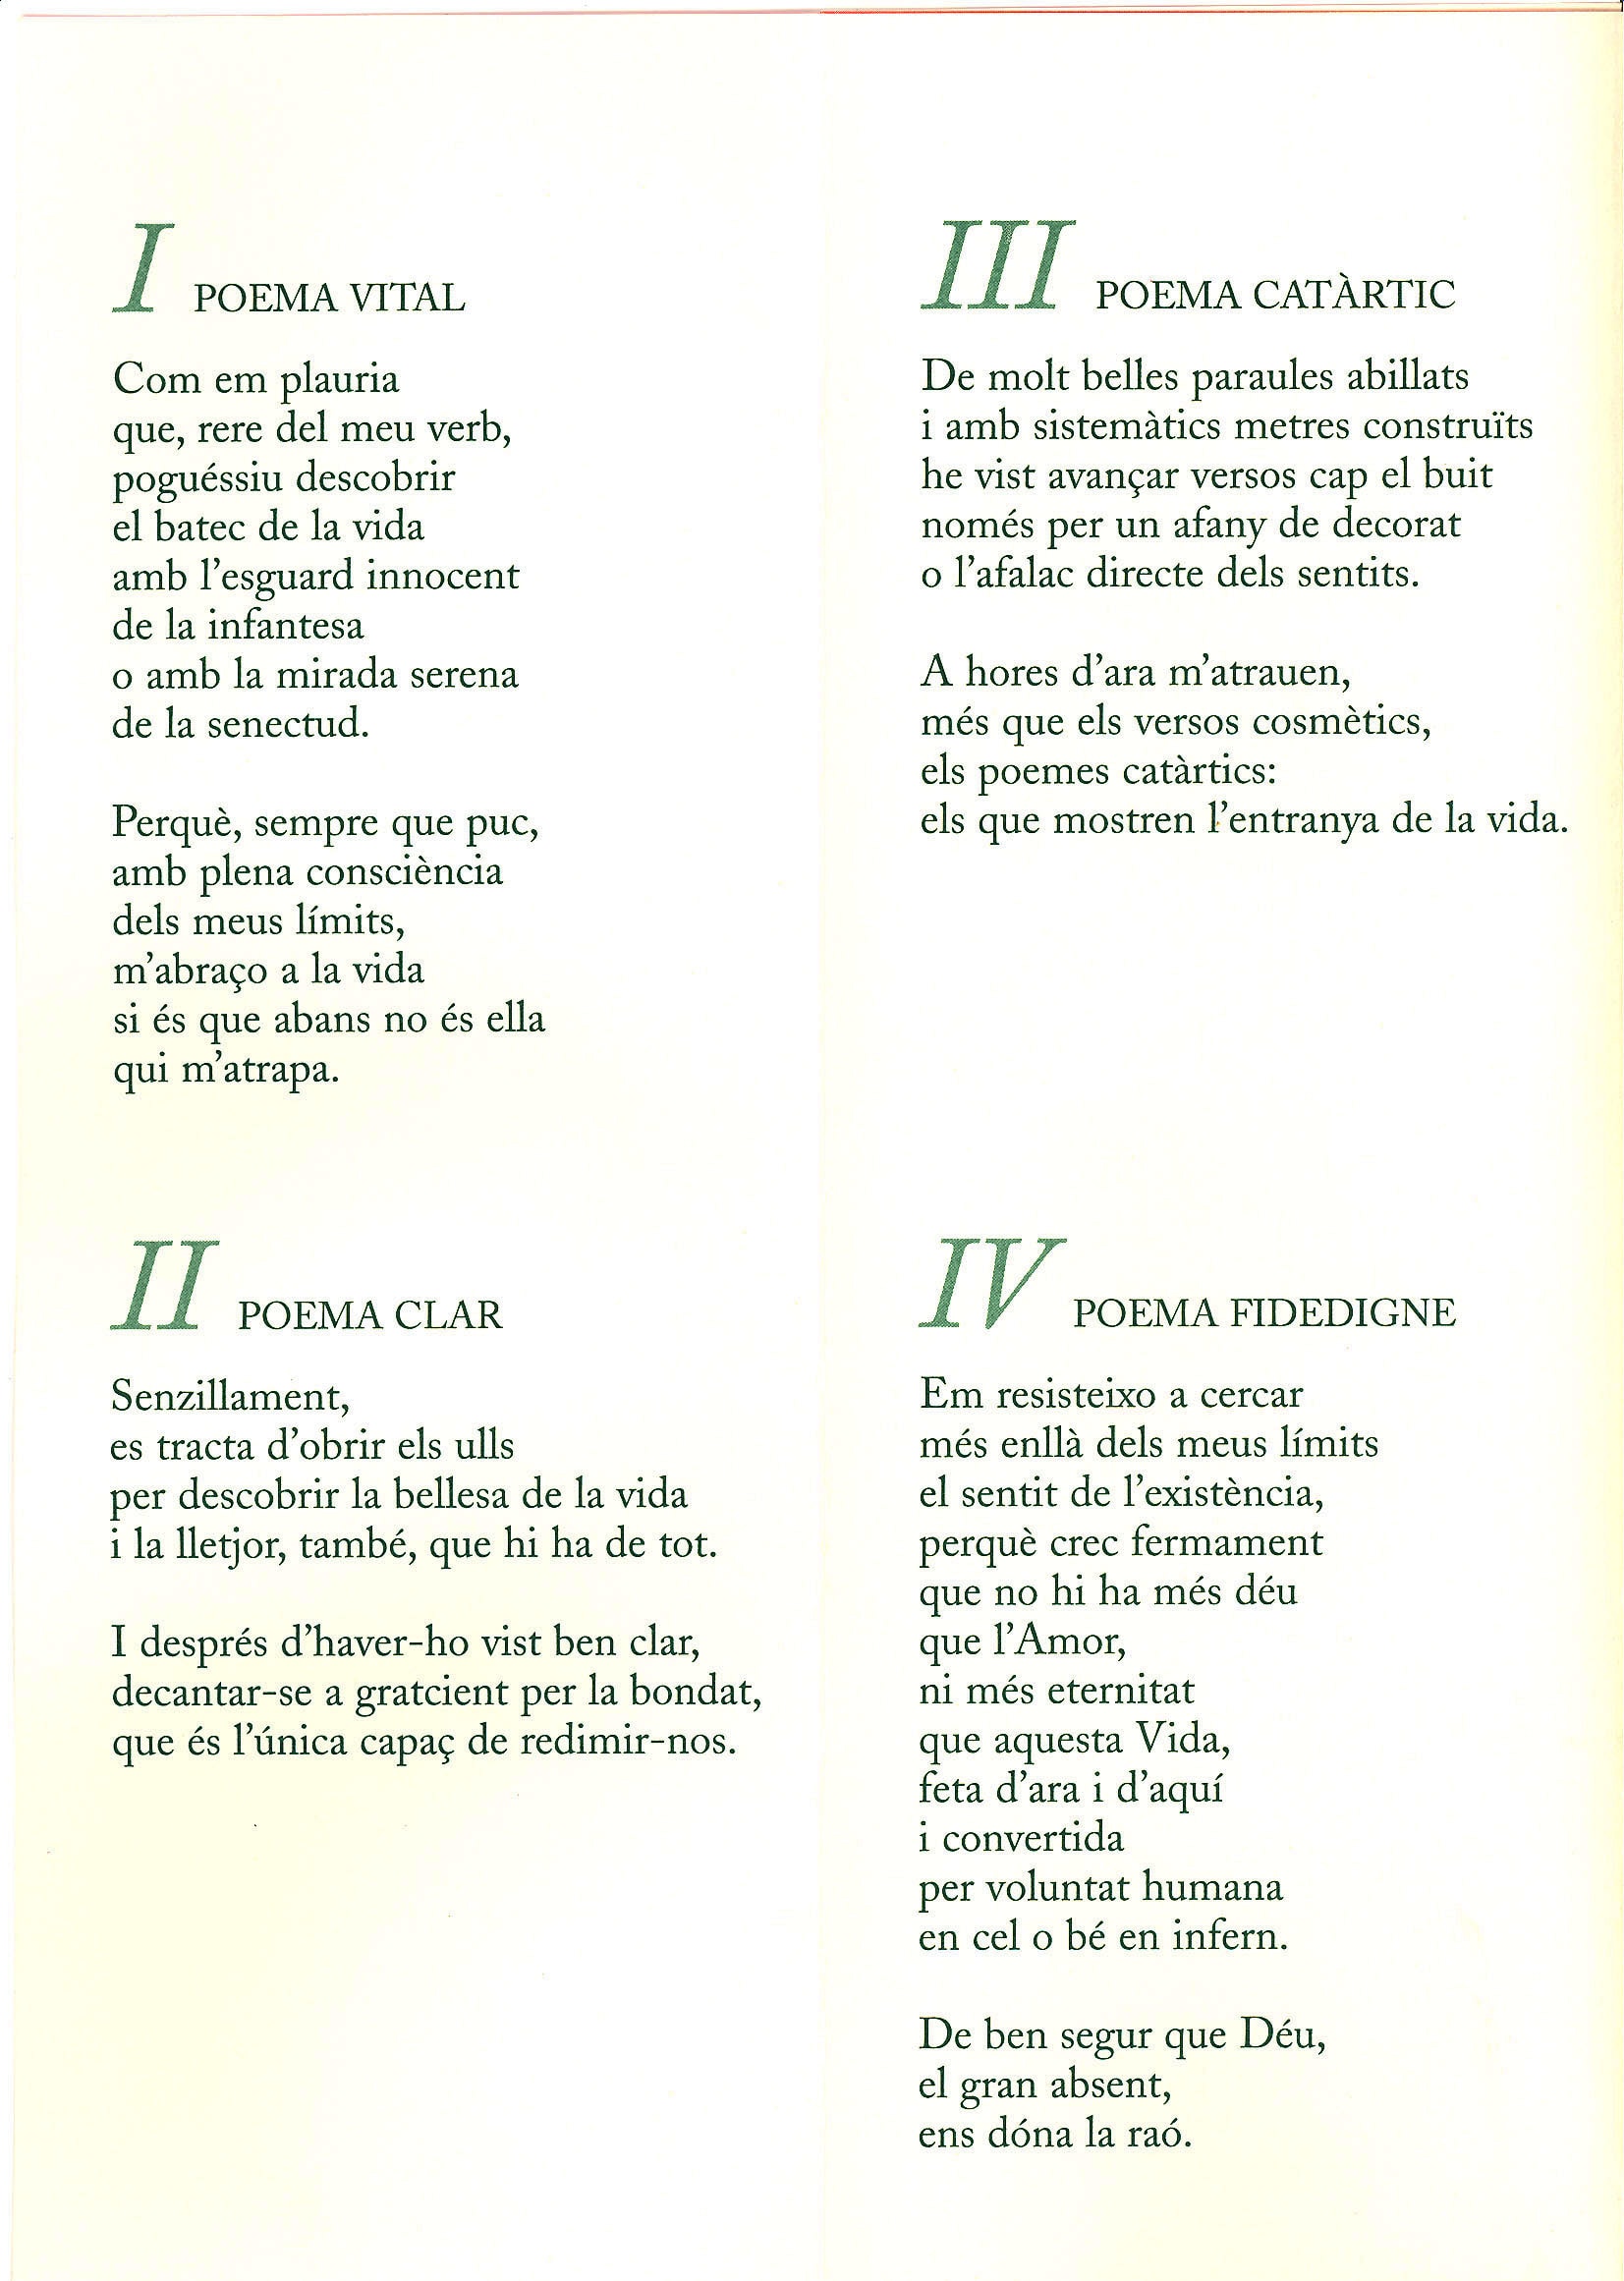 Aquest any poemes a la carta servits per Francesc Orenes